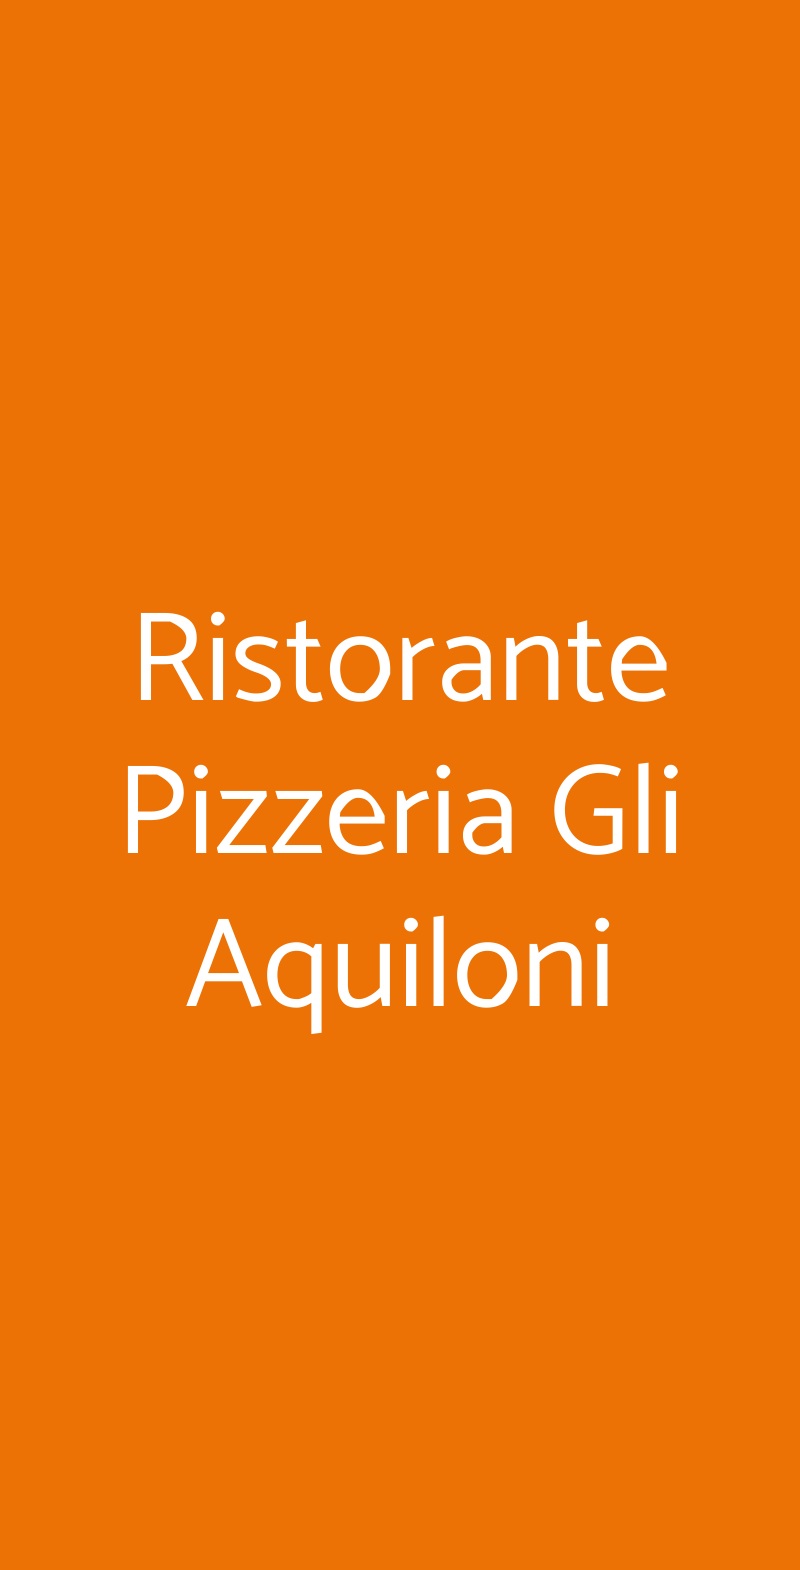 Ristorante Pizzeria Gli Aquiloni Roma menù 1 pagina